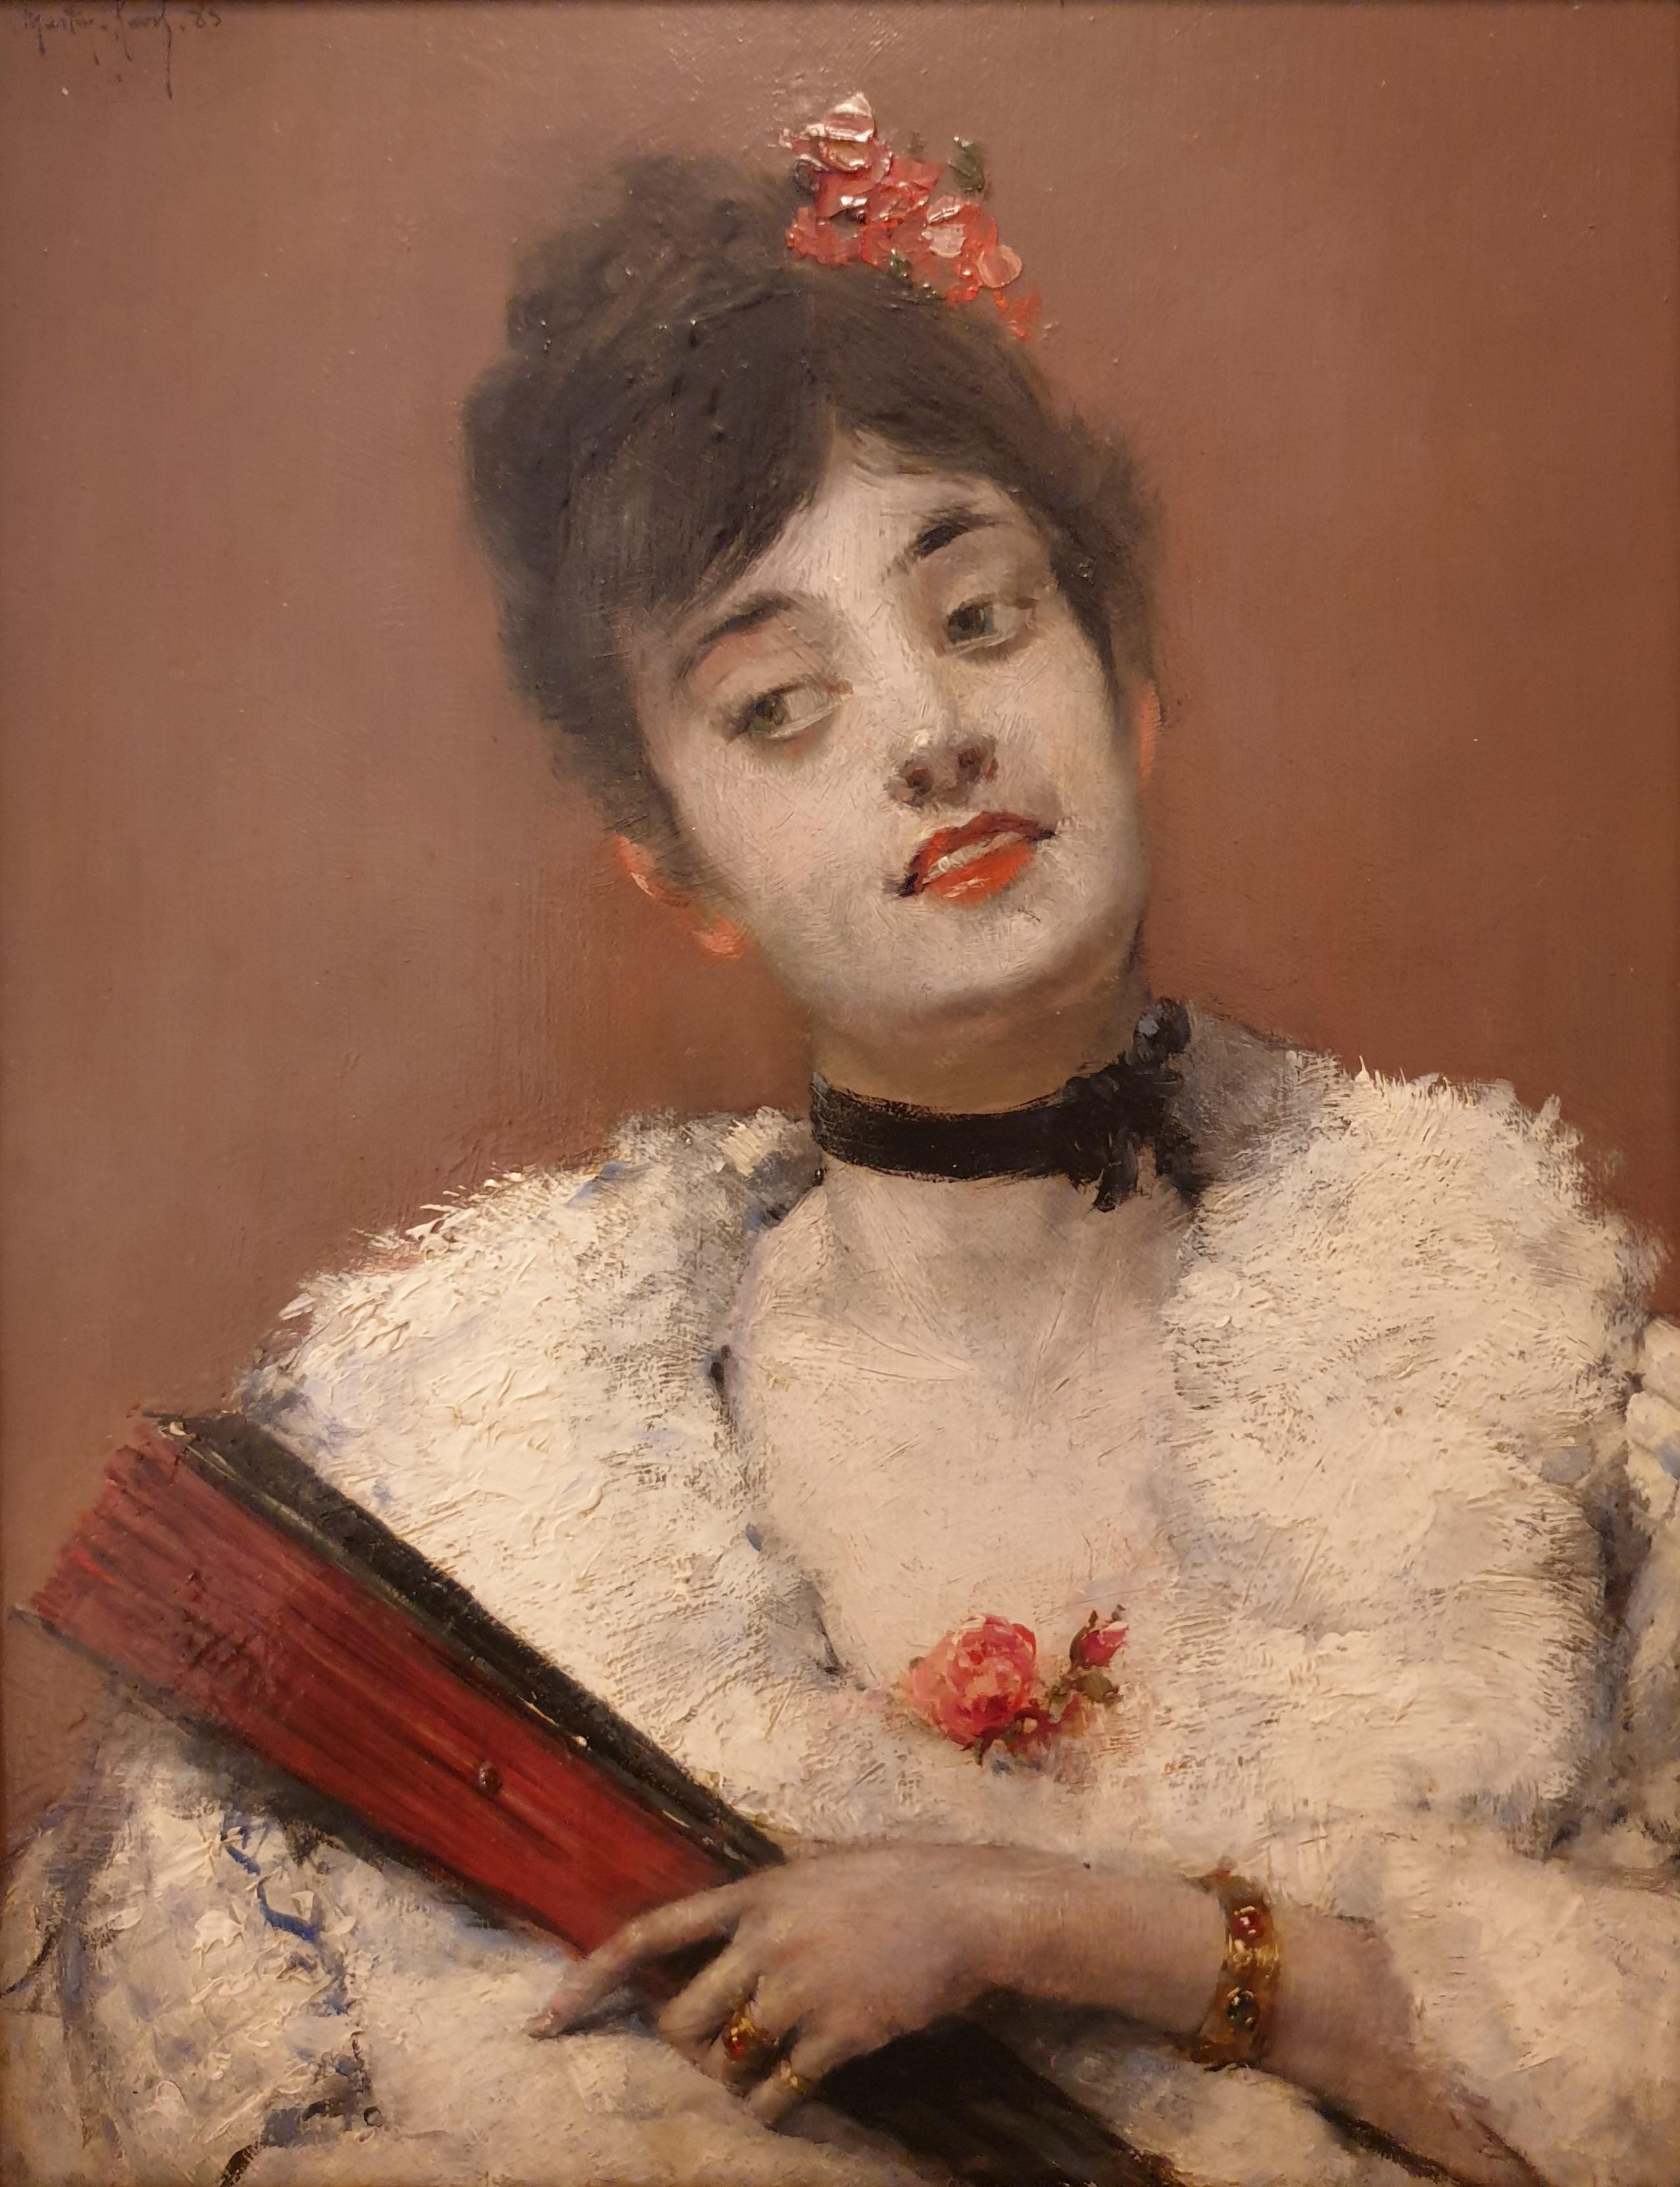 MARTIN-KAVEL Porträt einer schönen Frau, eleganter Fan, realistisch, französisch, 19. Jahrhundert – Painting von François Martin-Kavel